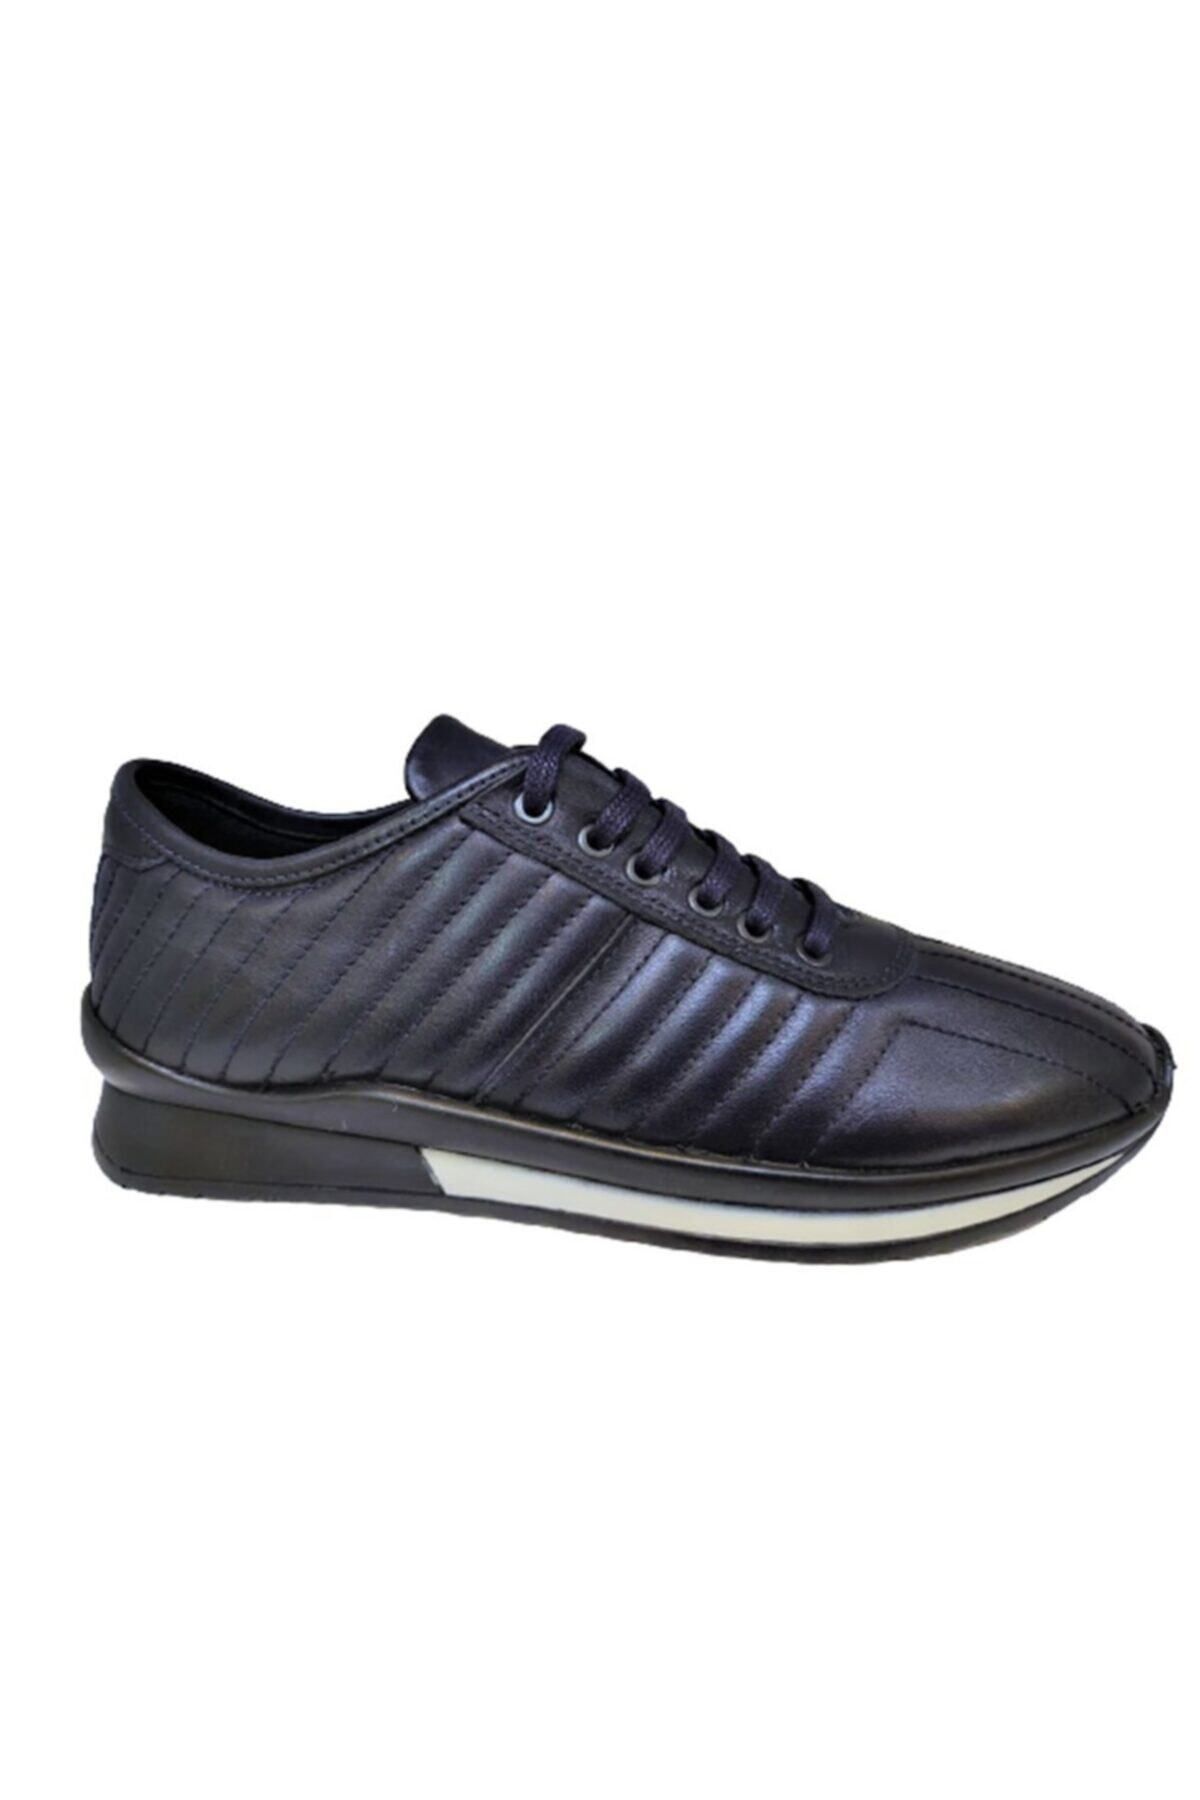 LUCIANO BELLINI E5202 Erkek Günlük Deri Spor Ayakkabı